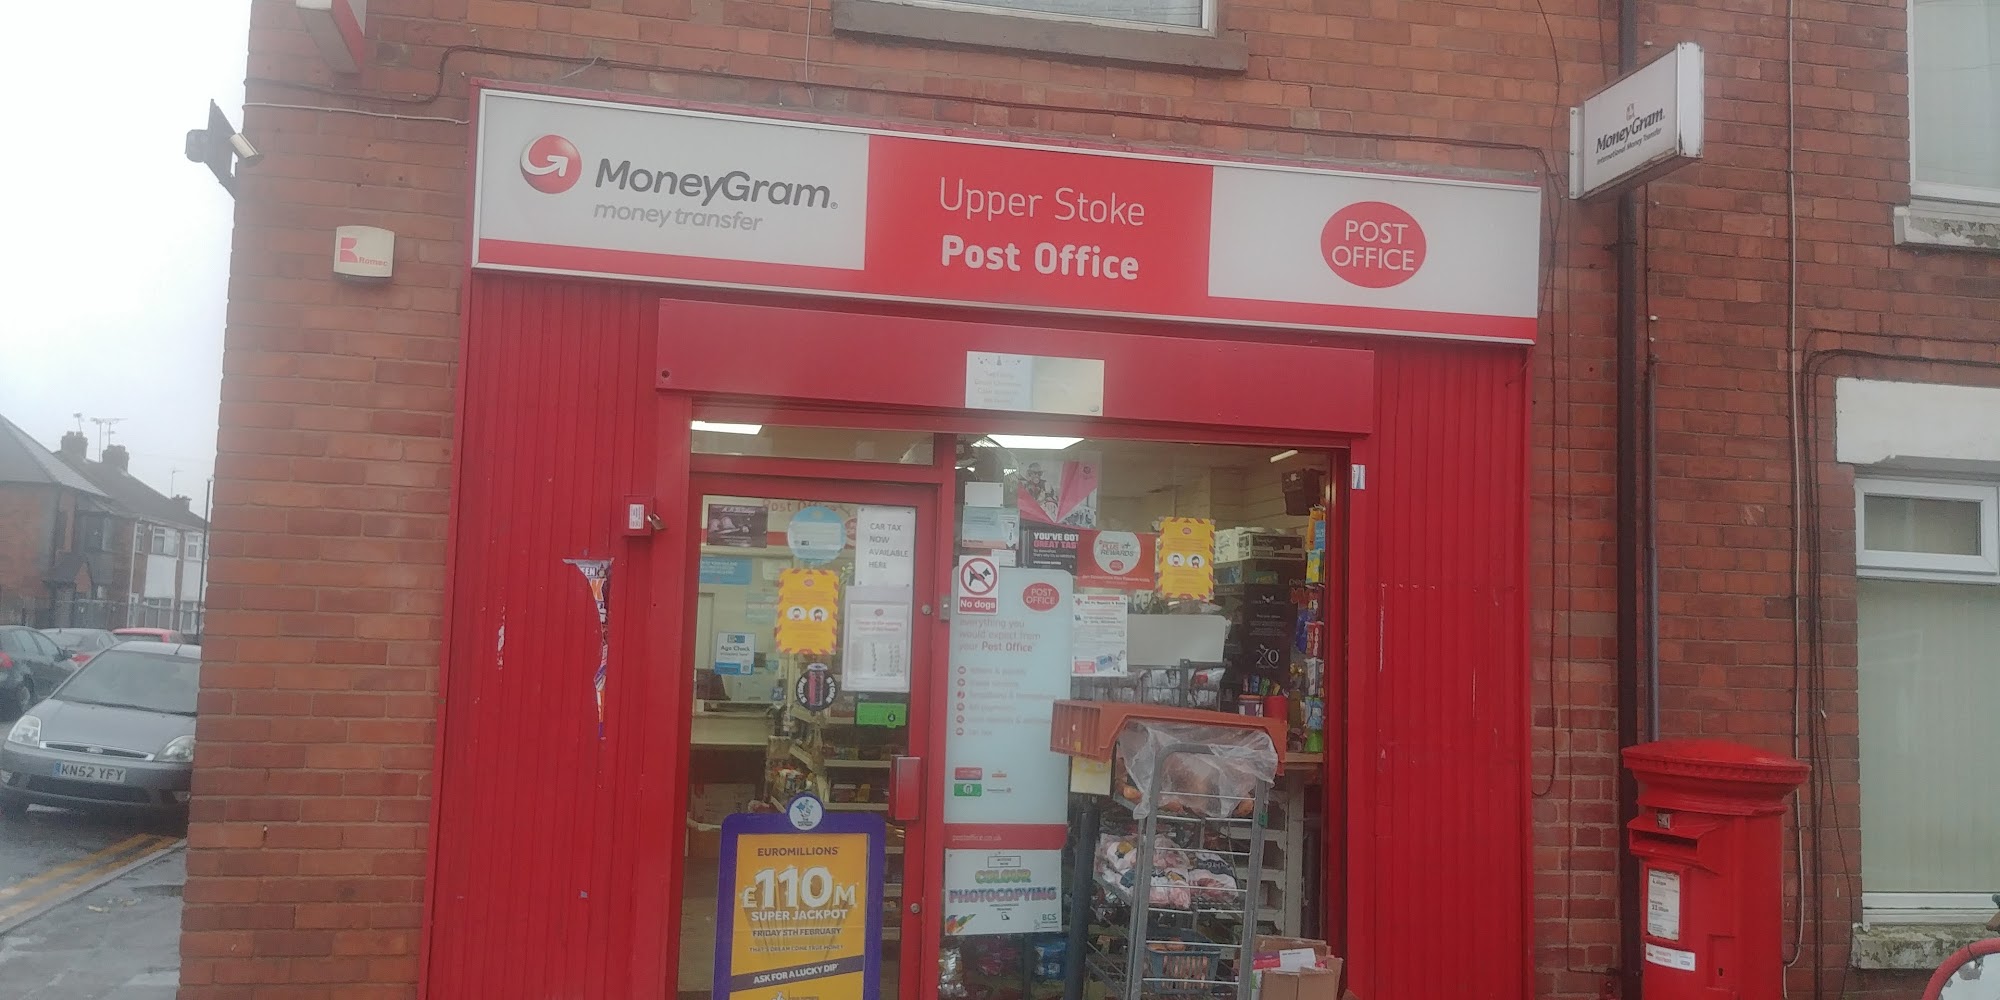 Upper Stoke Post Office